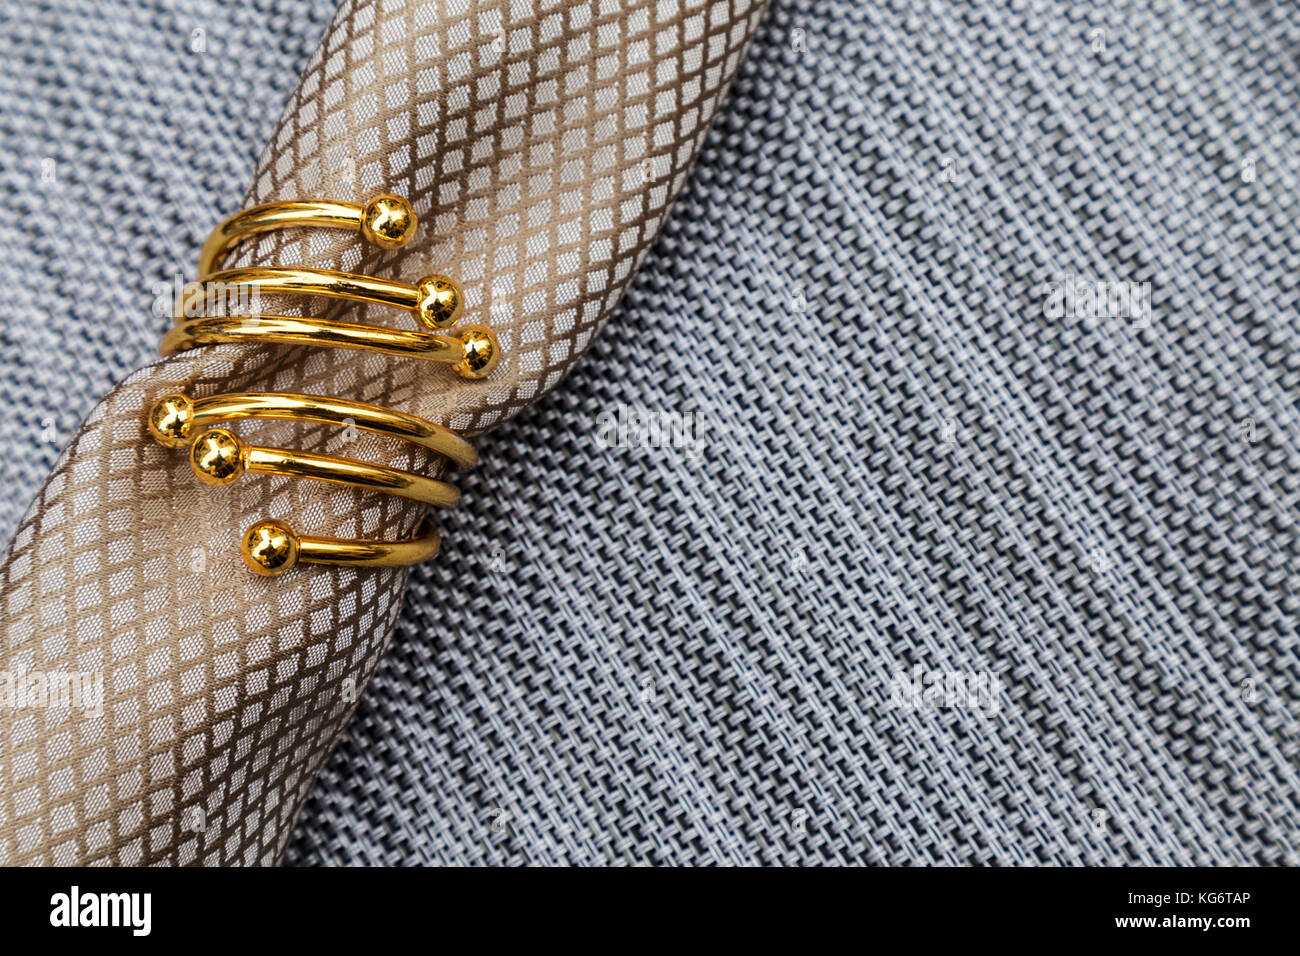 Schönen gold Serviette ring und die Serviette auf Unterlage, essen Tischdekoration Konzept und Hintergrund Stockfoto